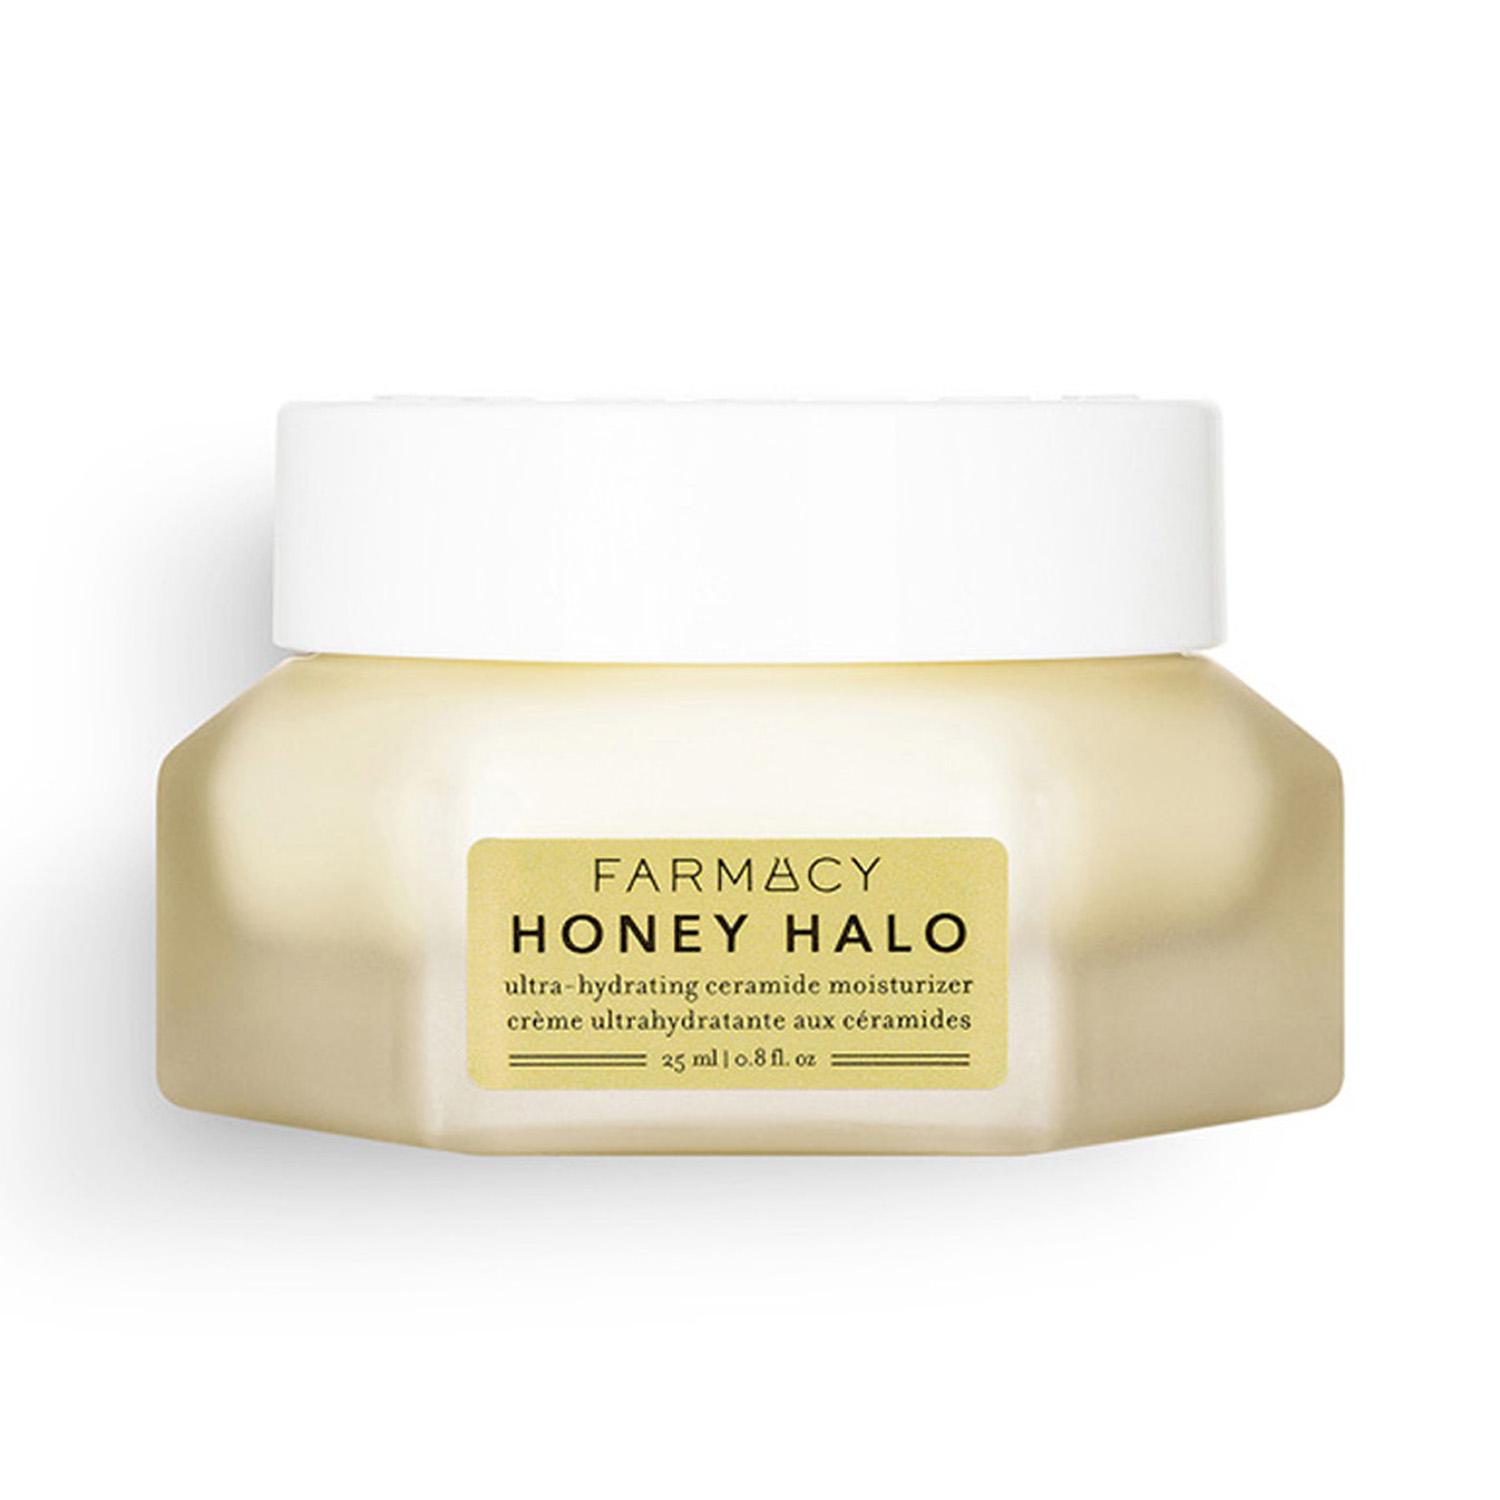 Farmacy Beauty | Farmacy Beauty Honey Halo Ultra-Hydrating Ceramide Moisturizer (25ml)